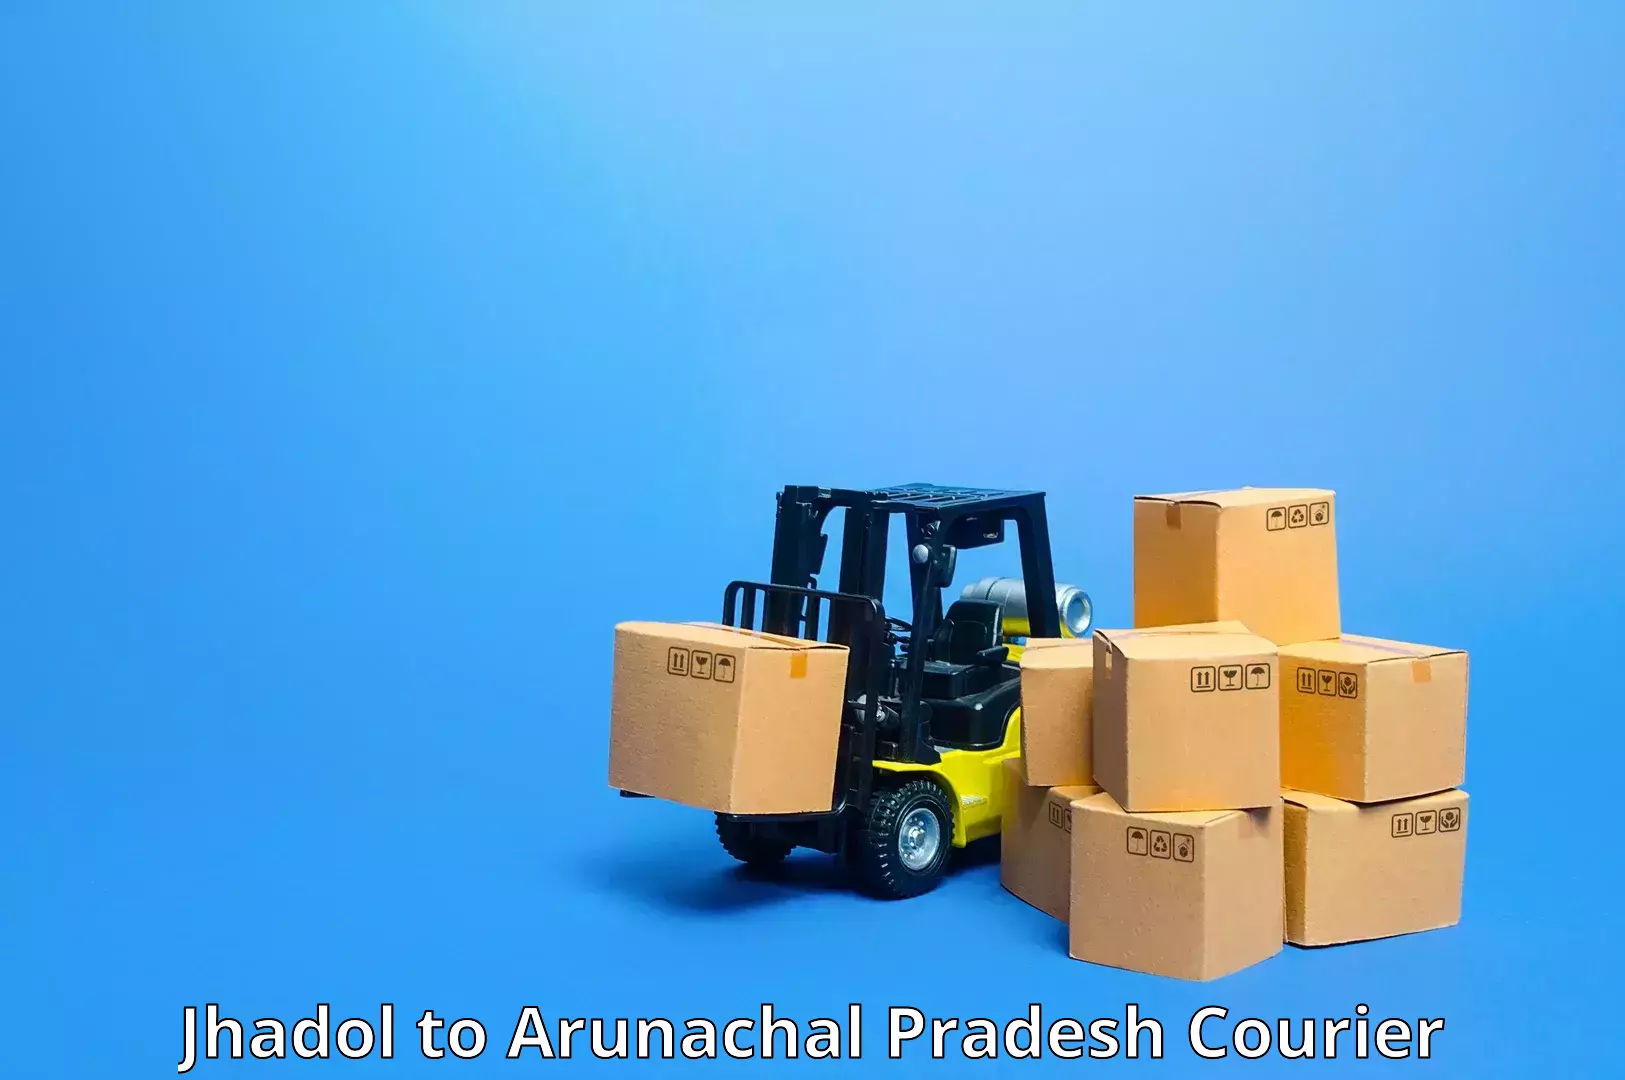 Cost-effective freight solutions Jhadol to Arunachal Pradesh